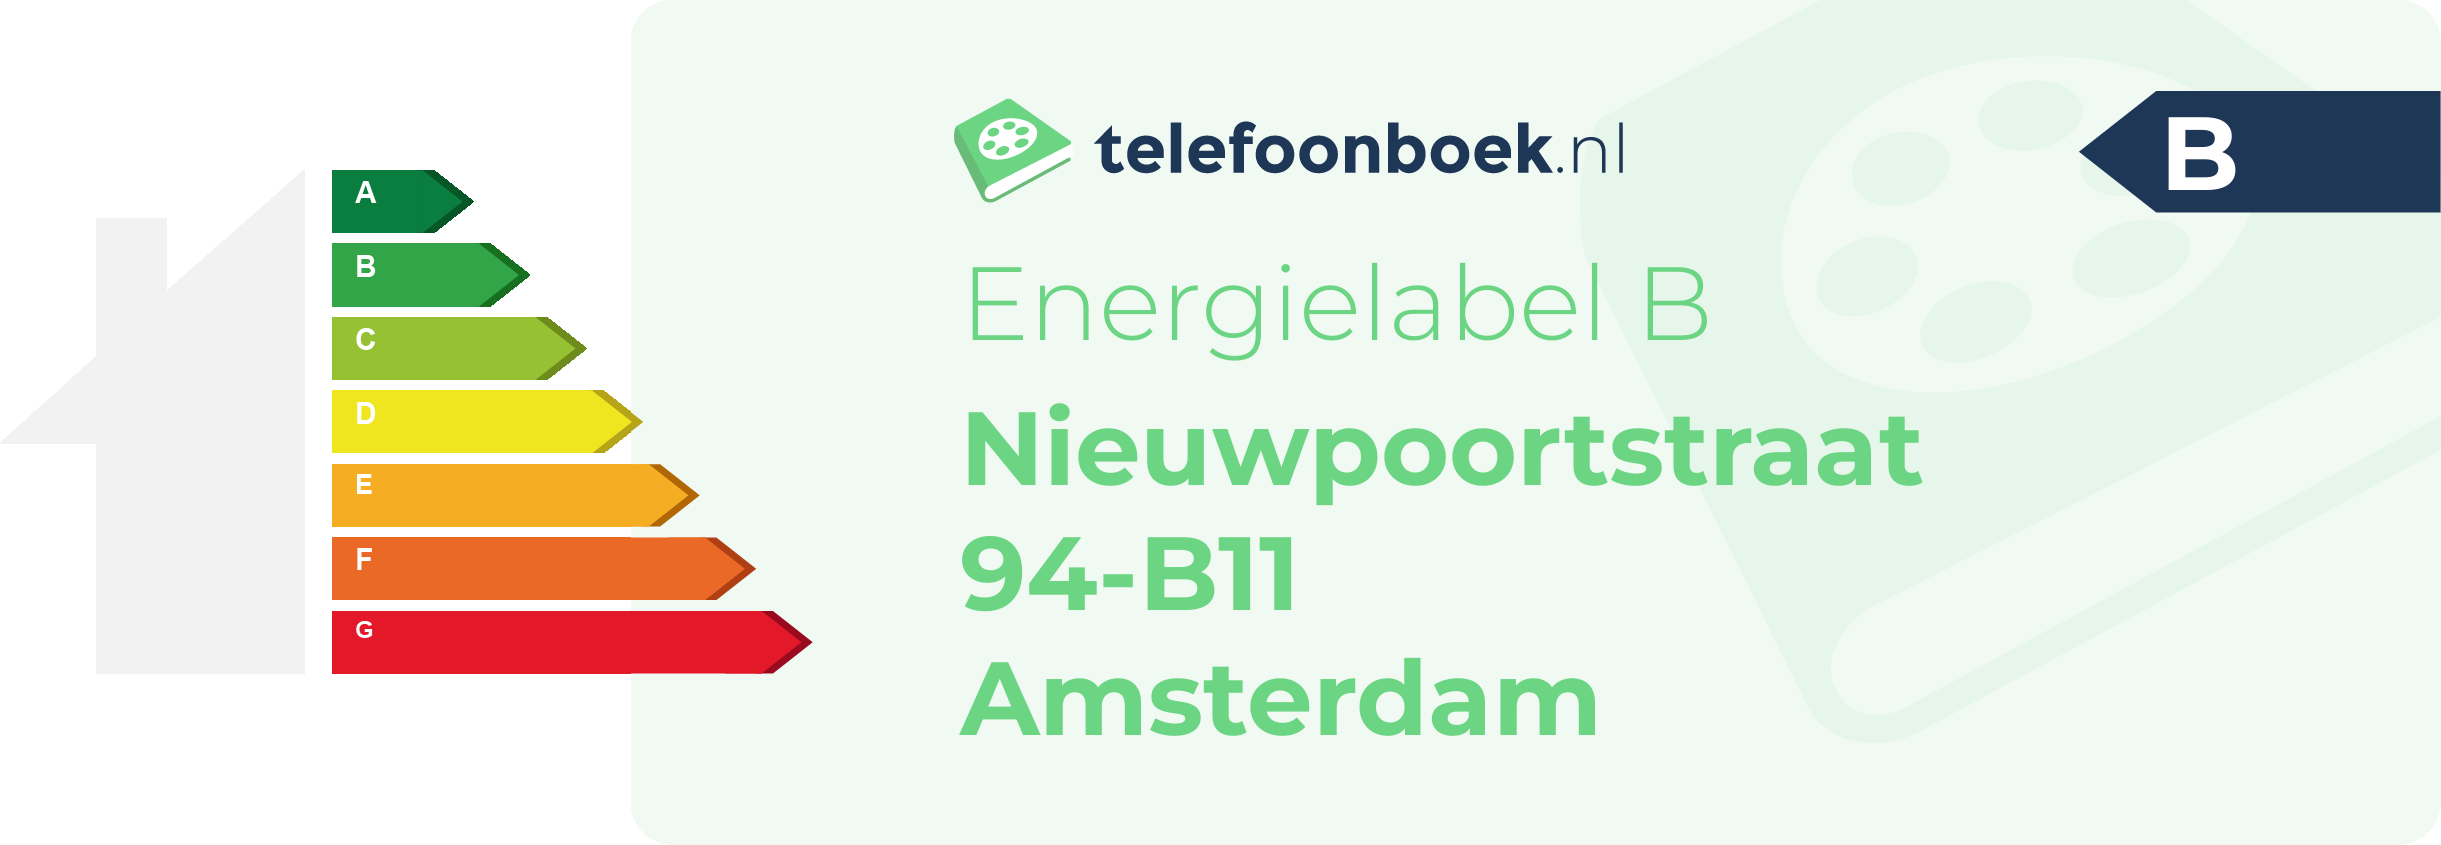 Energielabel Nieuwpoortstraat 94-B11 Amsterdam